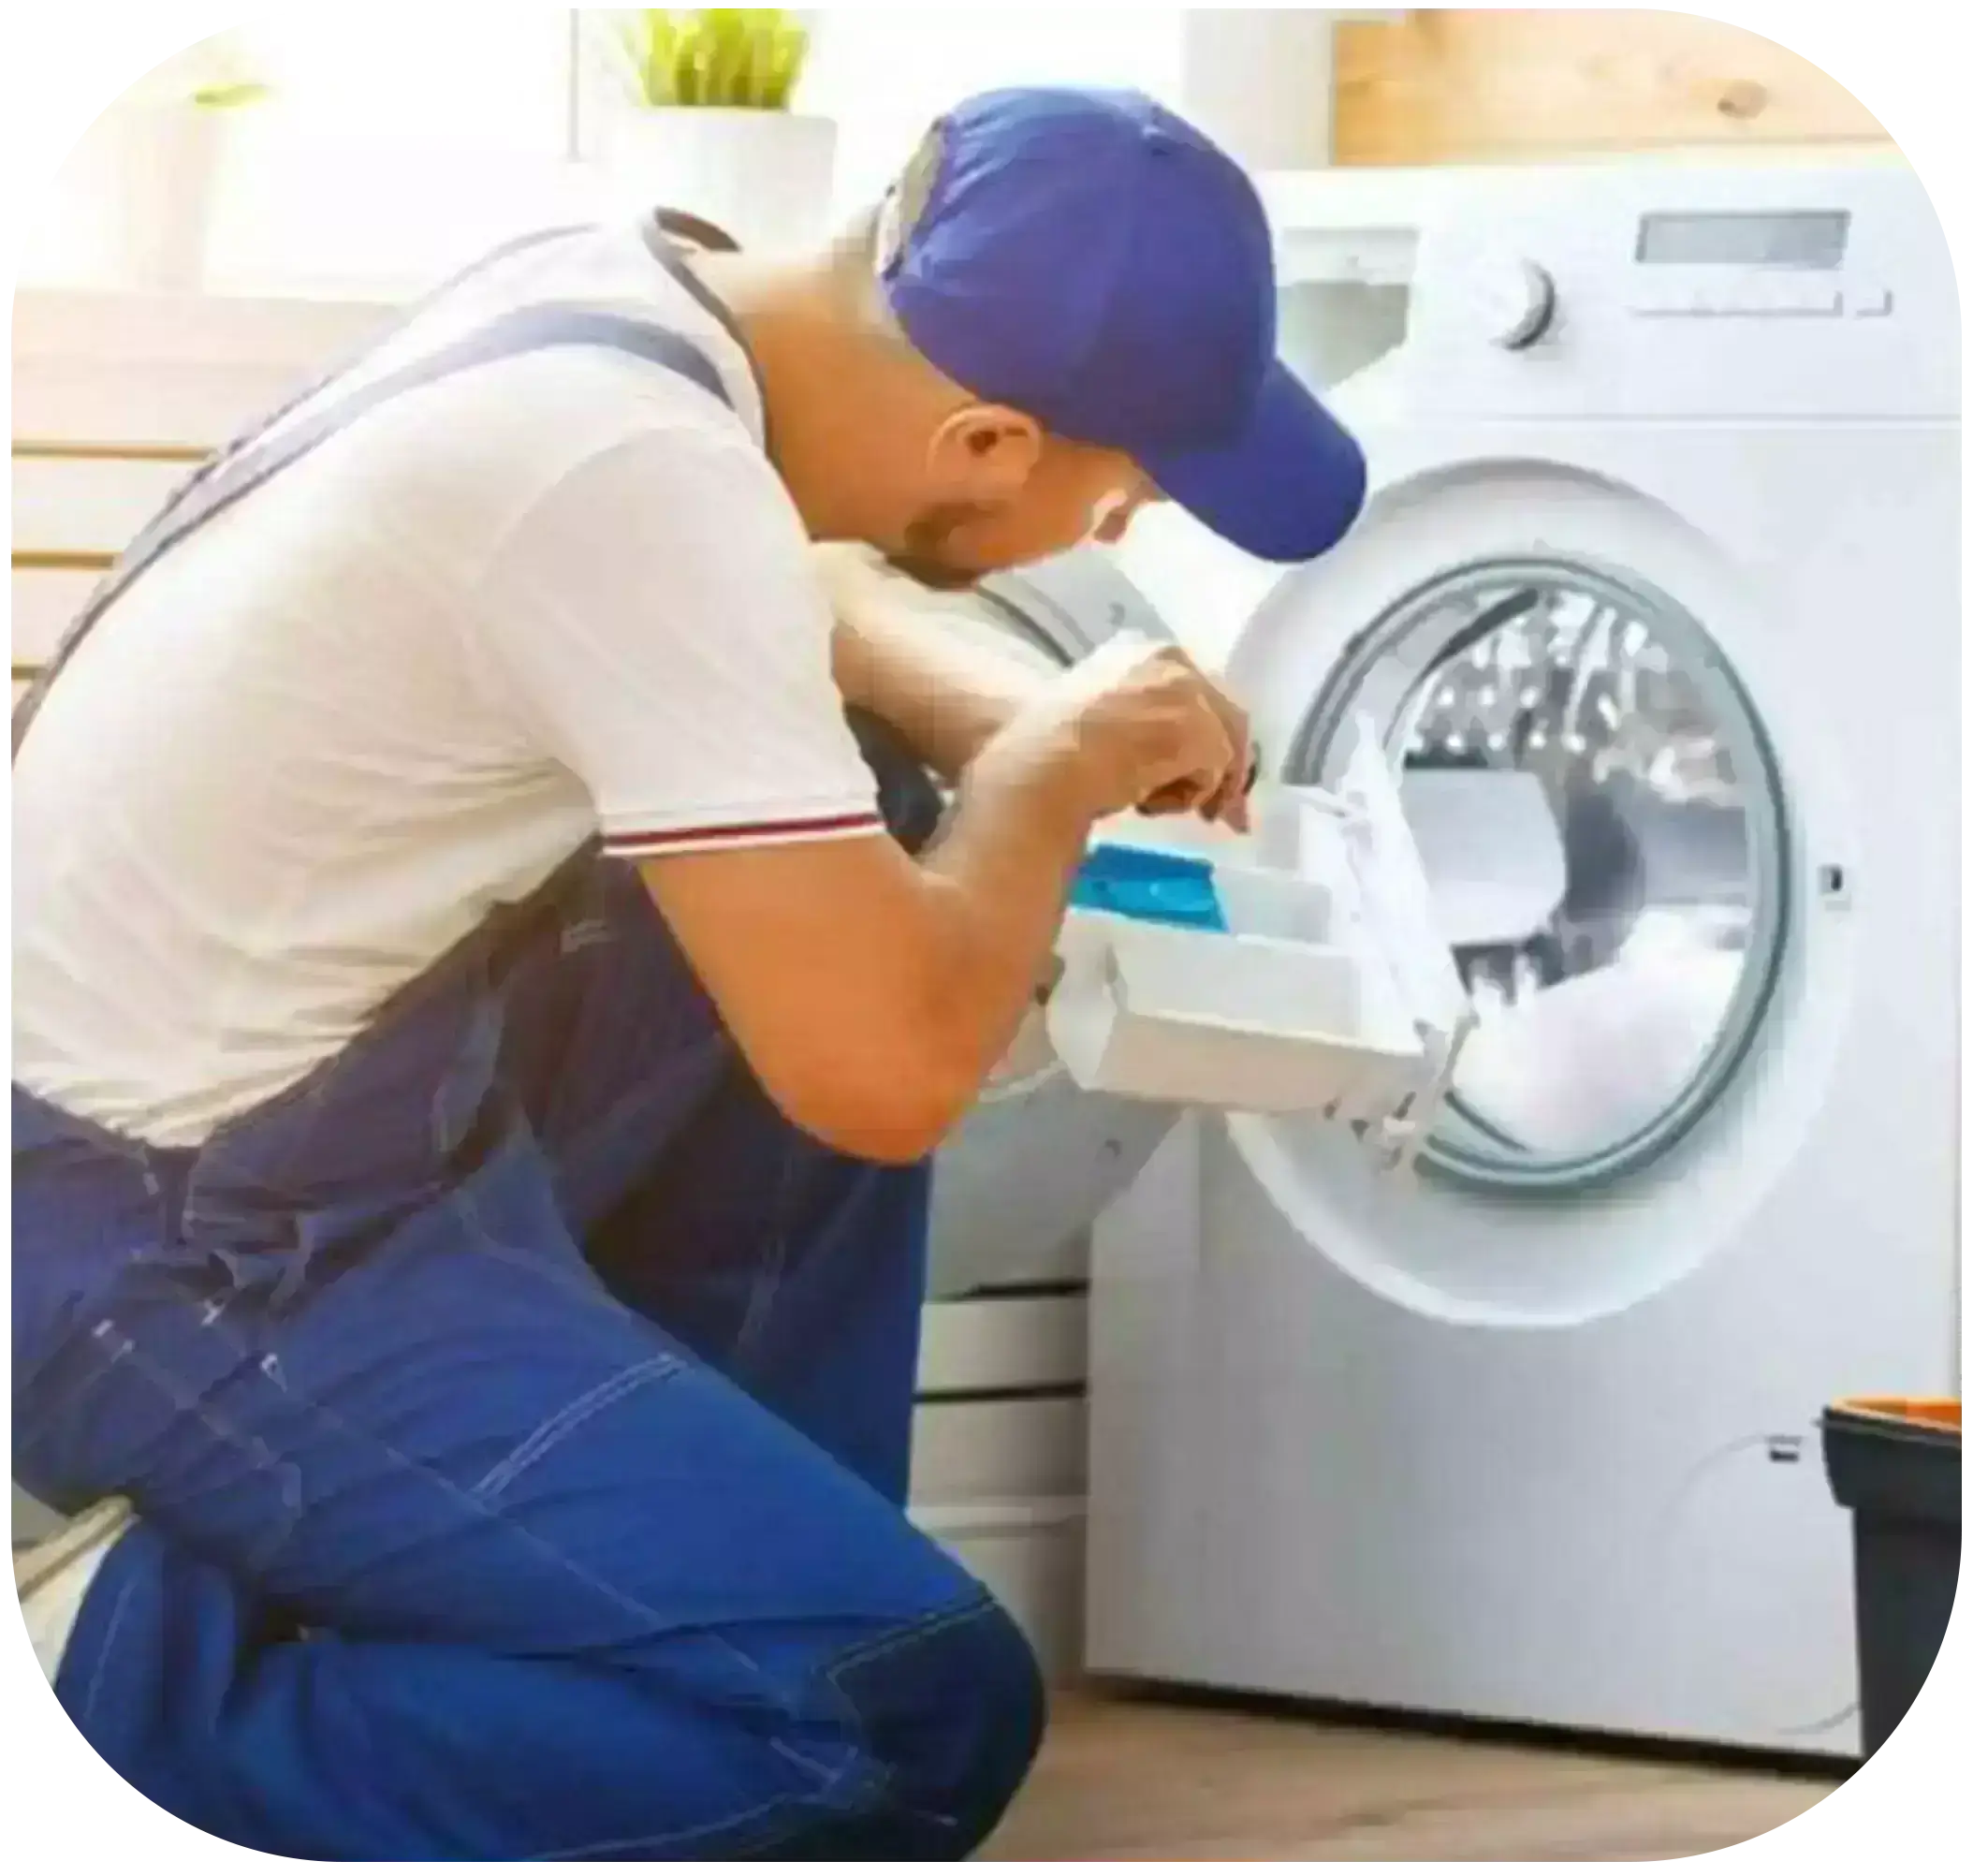 The guy is repairing the washing machine.